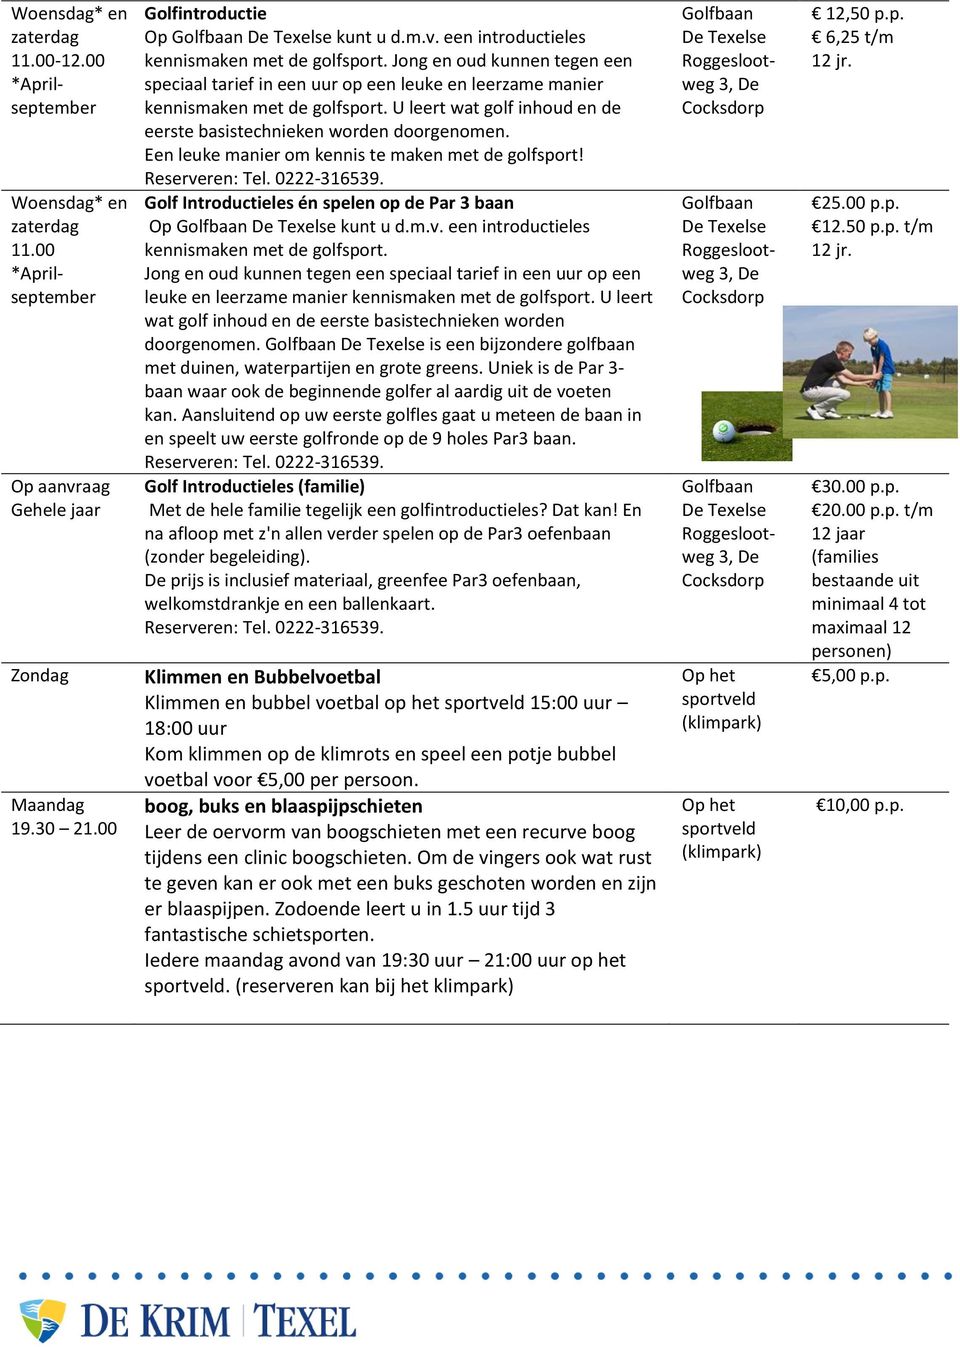 Een leuke manier om kennis te maken met de golfsport! Reserveren: Tel. 0222316539. Golf Introductieles én spelen op de Par 3 baan Op Golfbaan De Texelse kunt u d.m.v. een introductieles kennismaken met de golfsport.